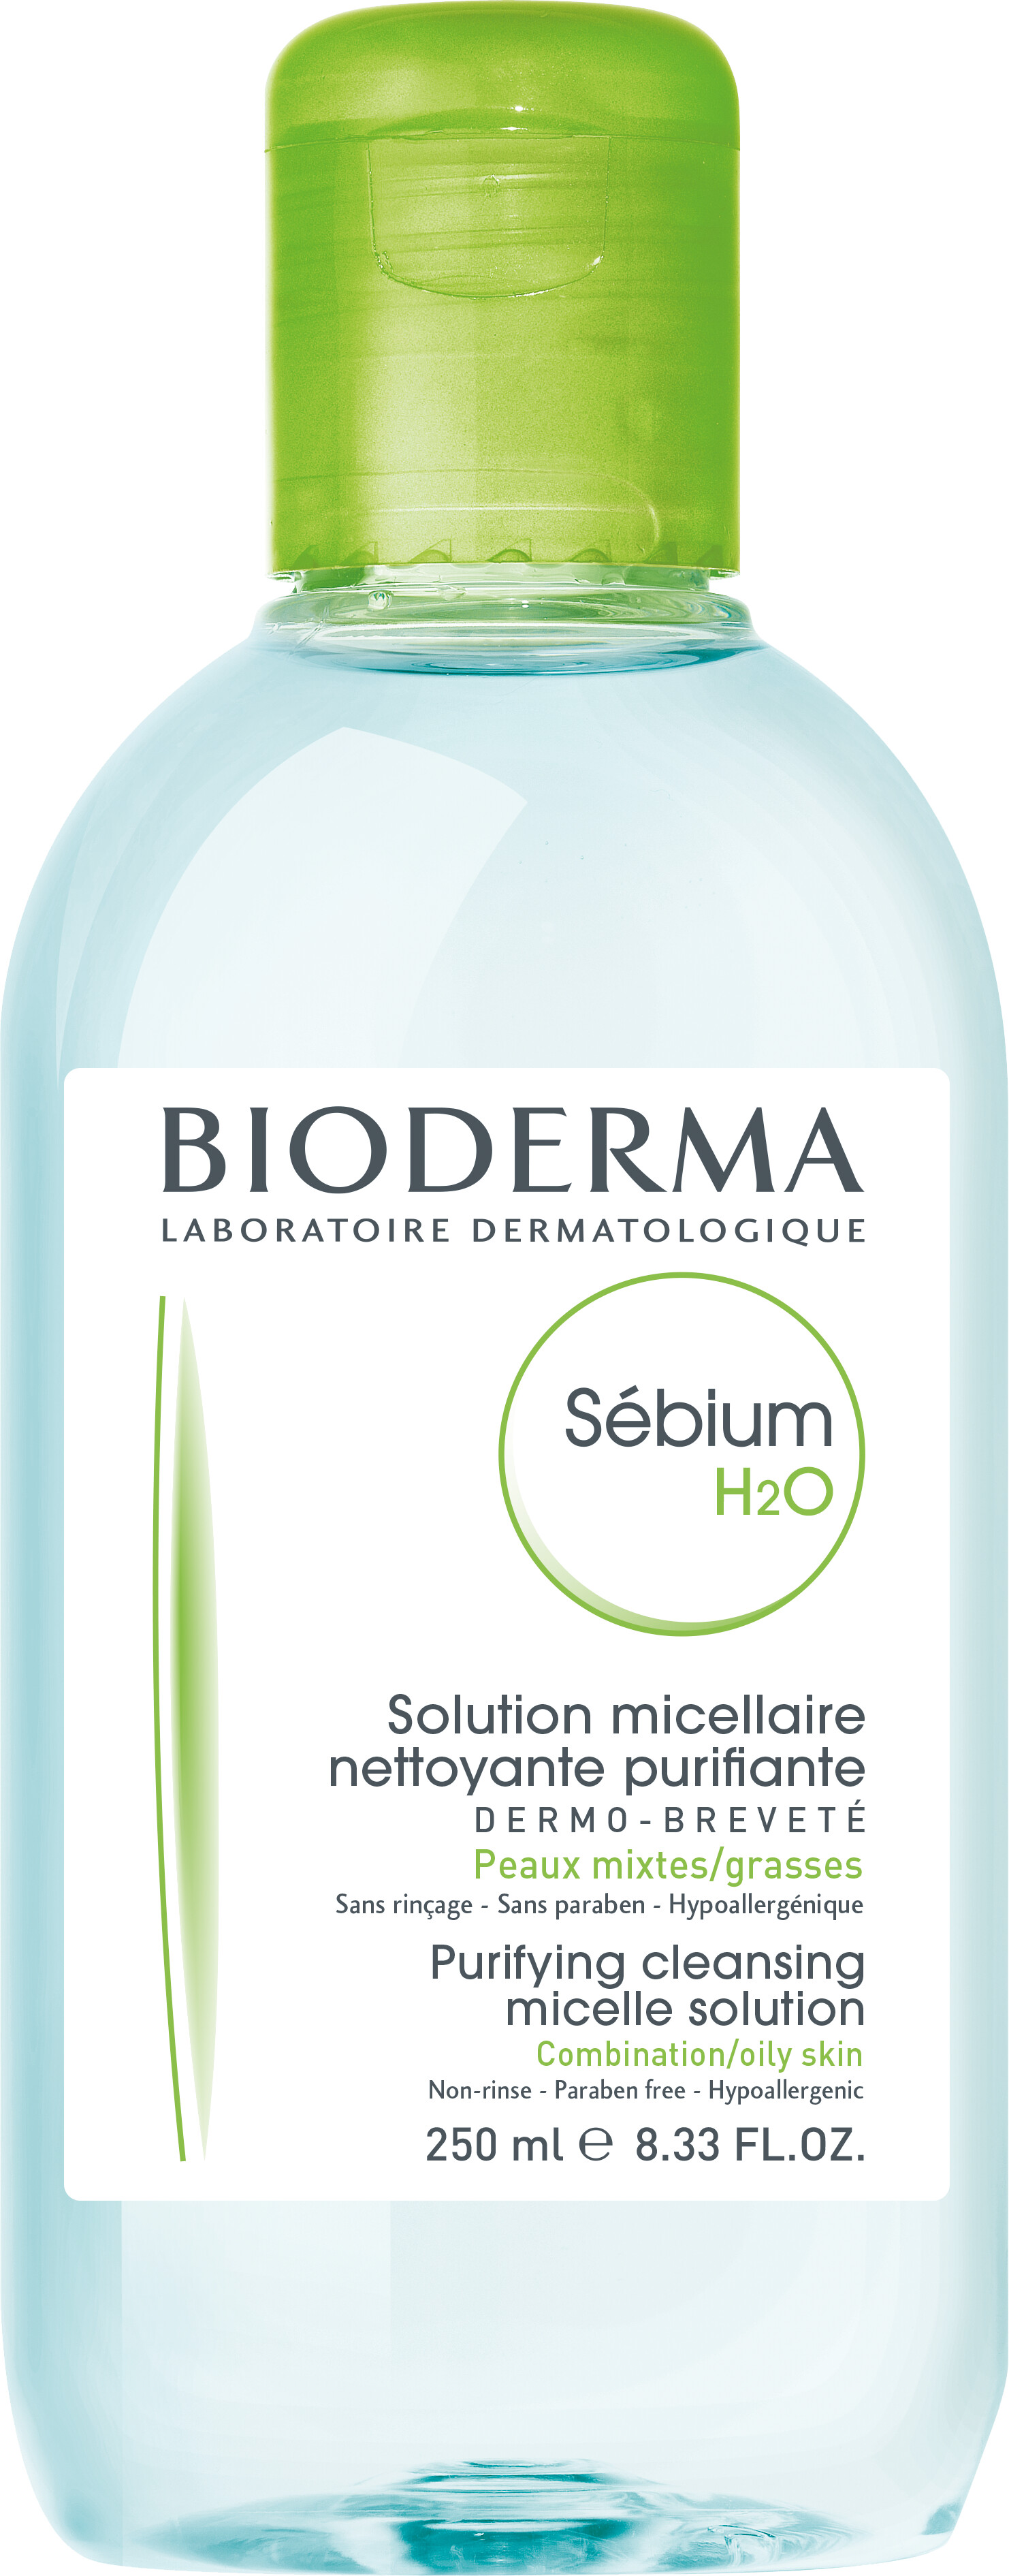 Bioderma Sebium H2O - Micelle Solution 250ml